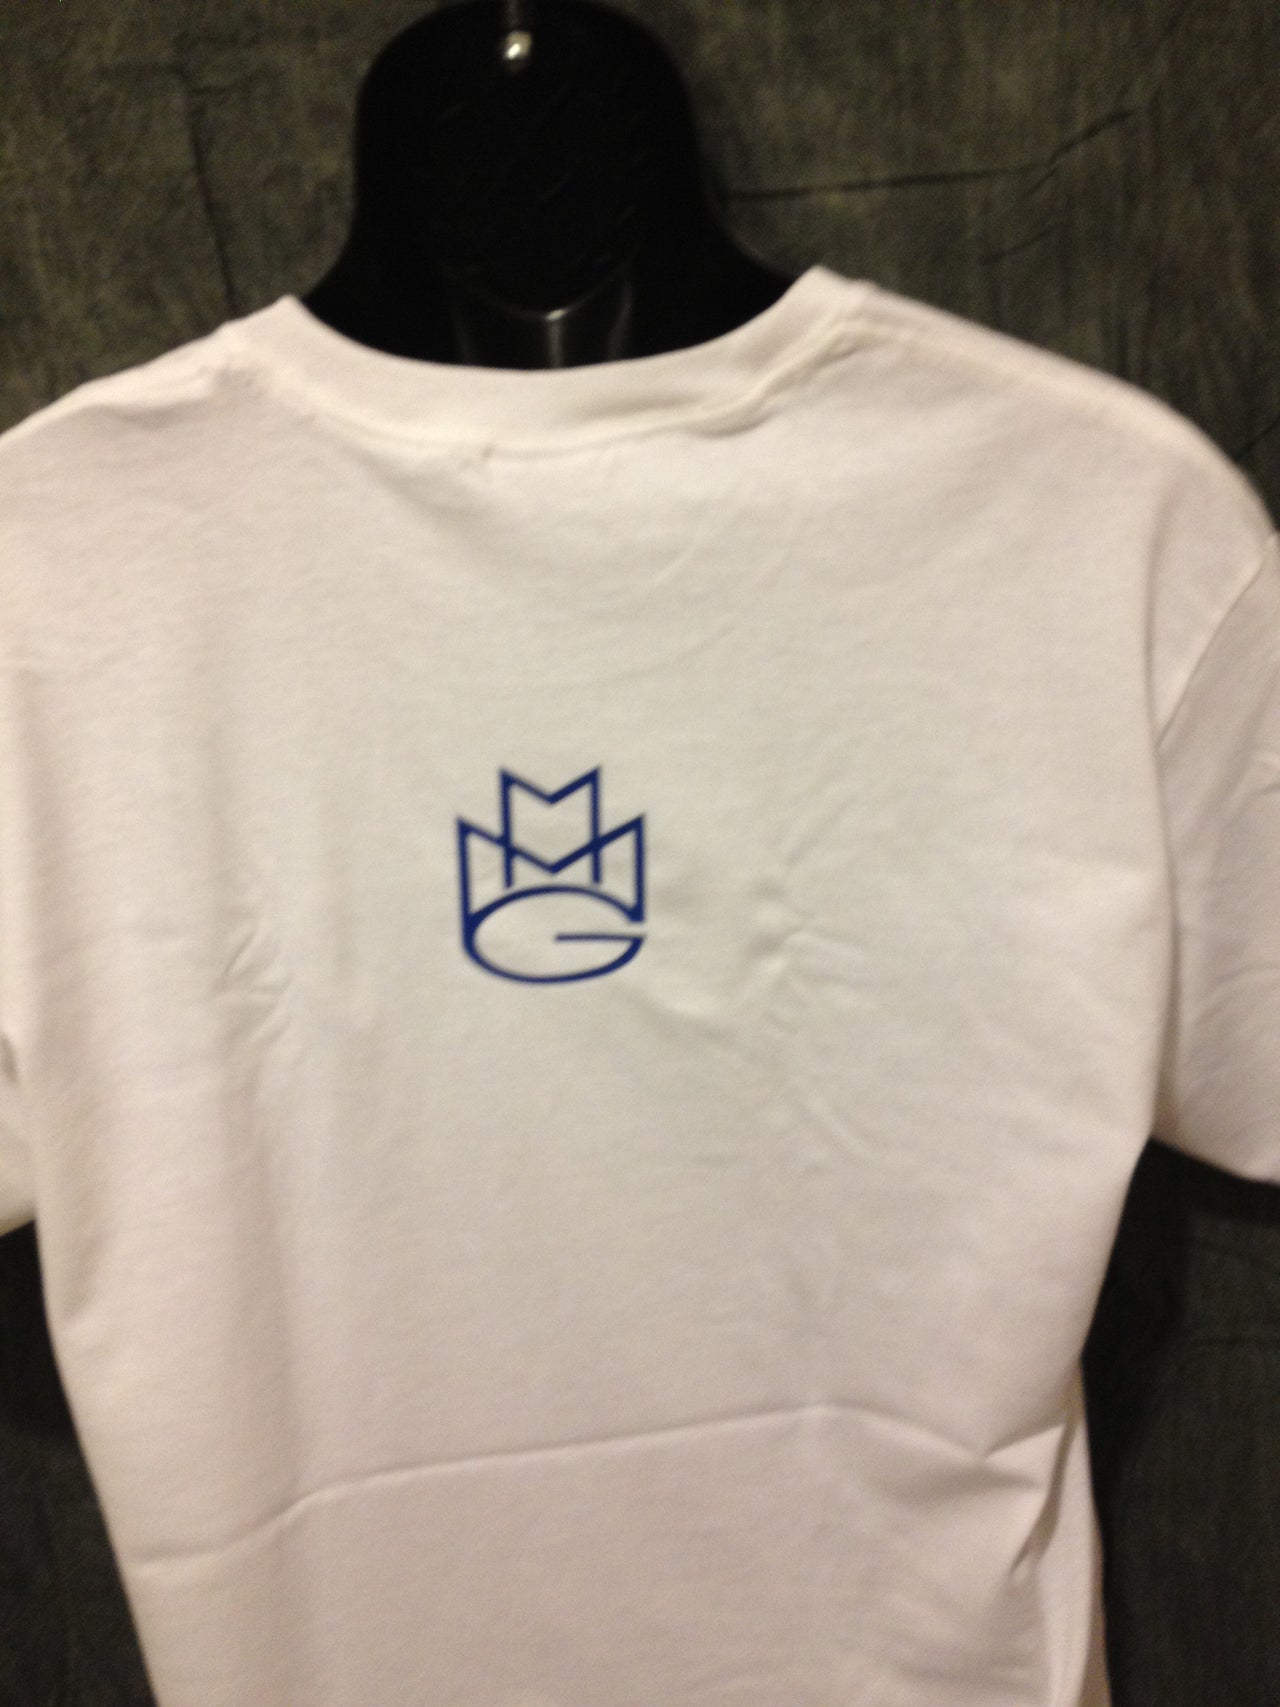 Maybach Music Group Tshirt: White with Blue Print - TshirtNow.net - 3